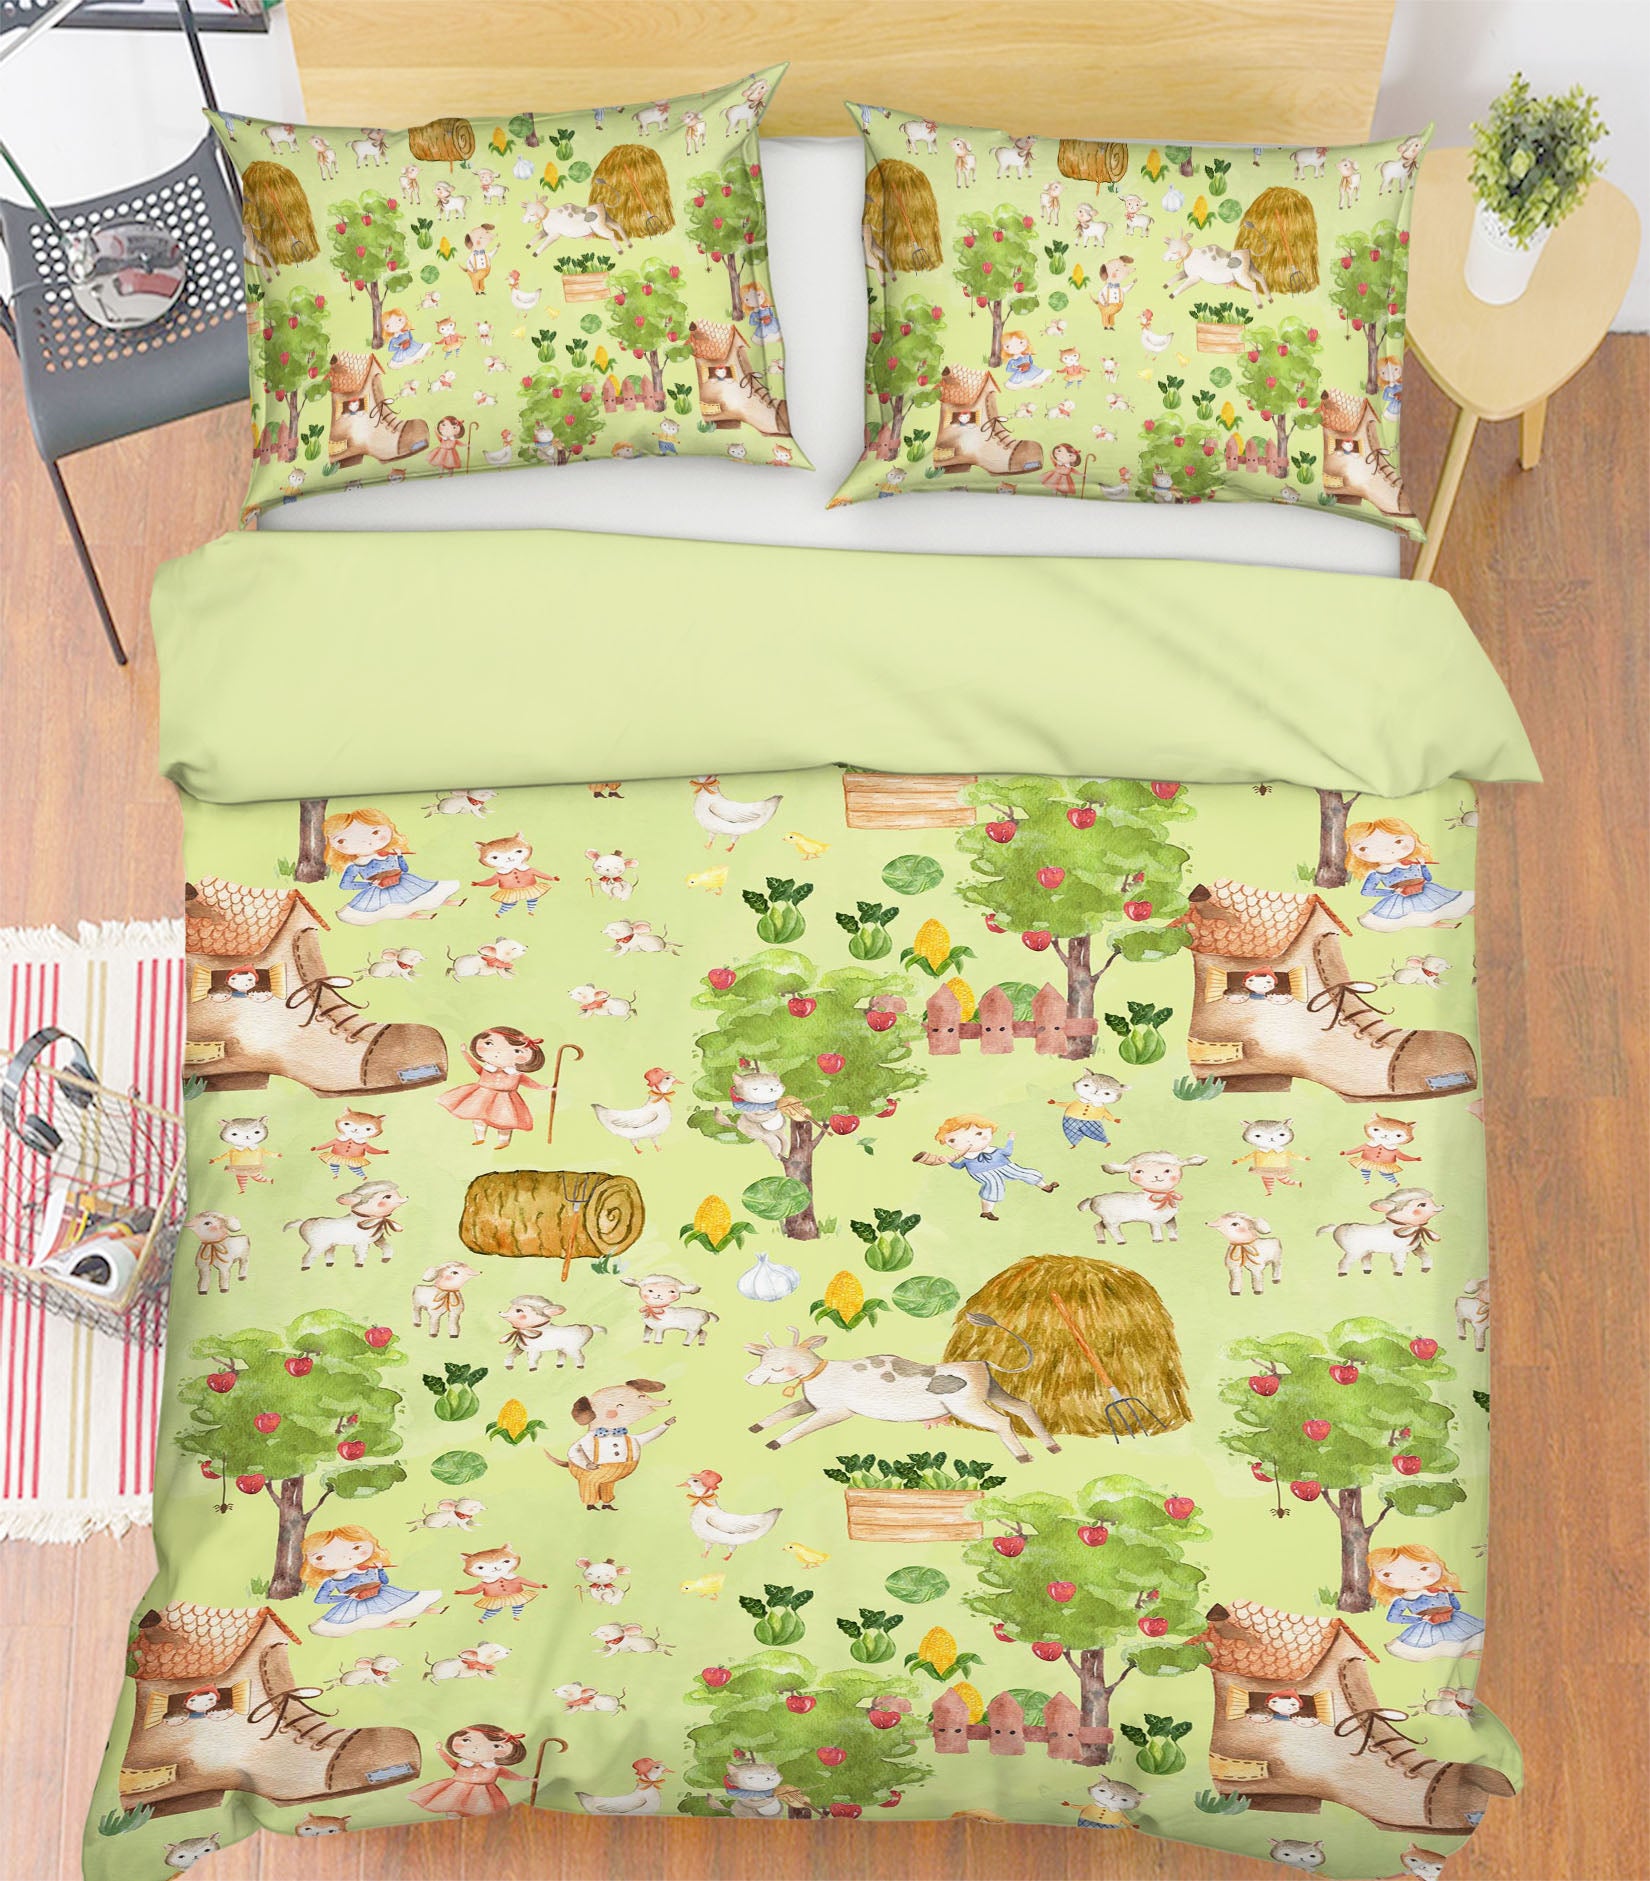 3D Shoe House Sheep 190 Uta Naumann Bedding Bed Pillowcases Quilt